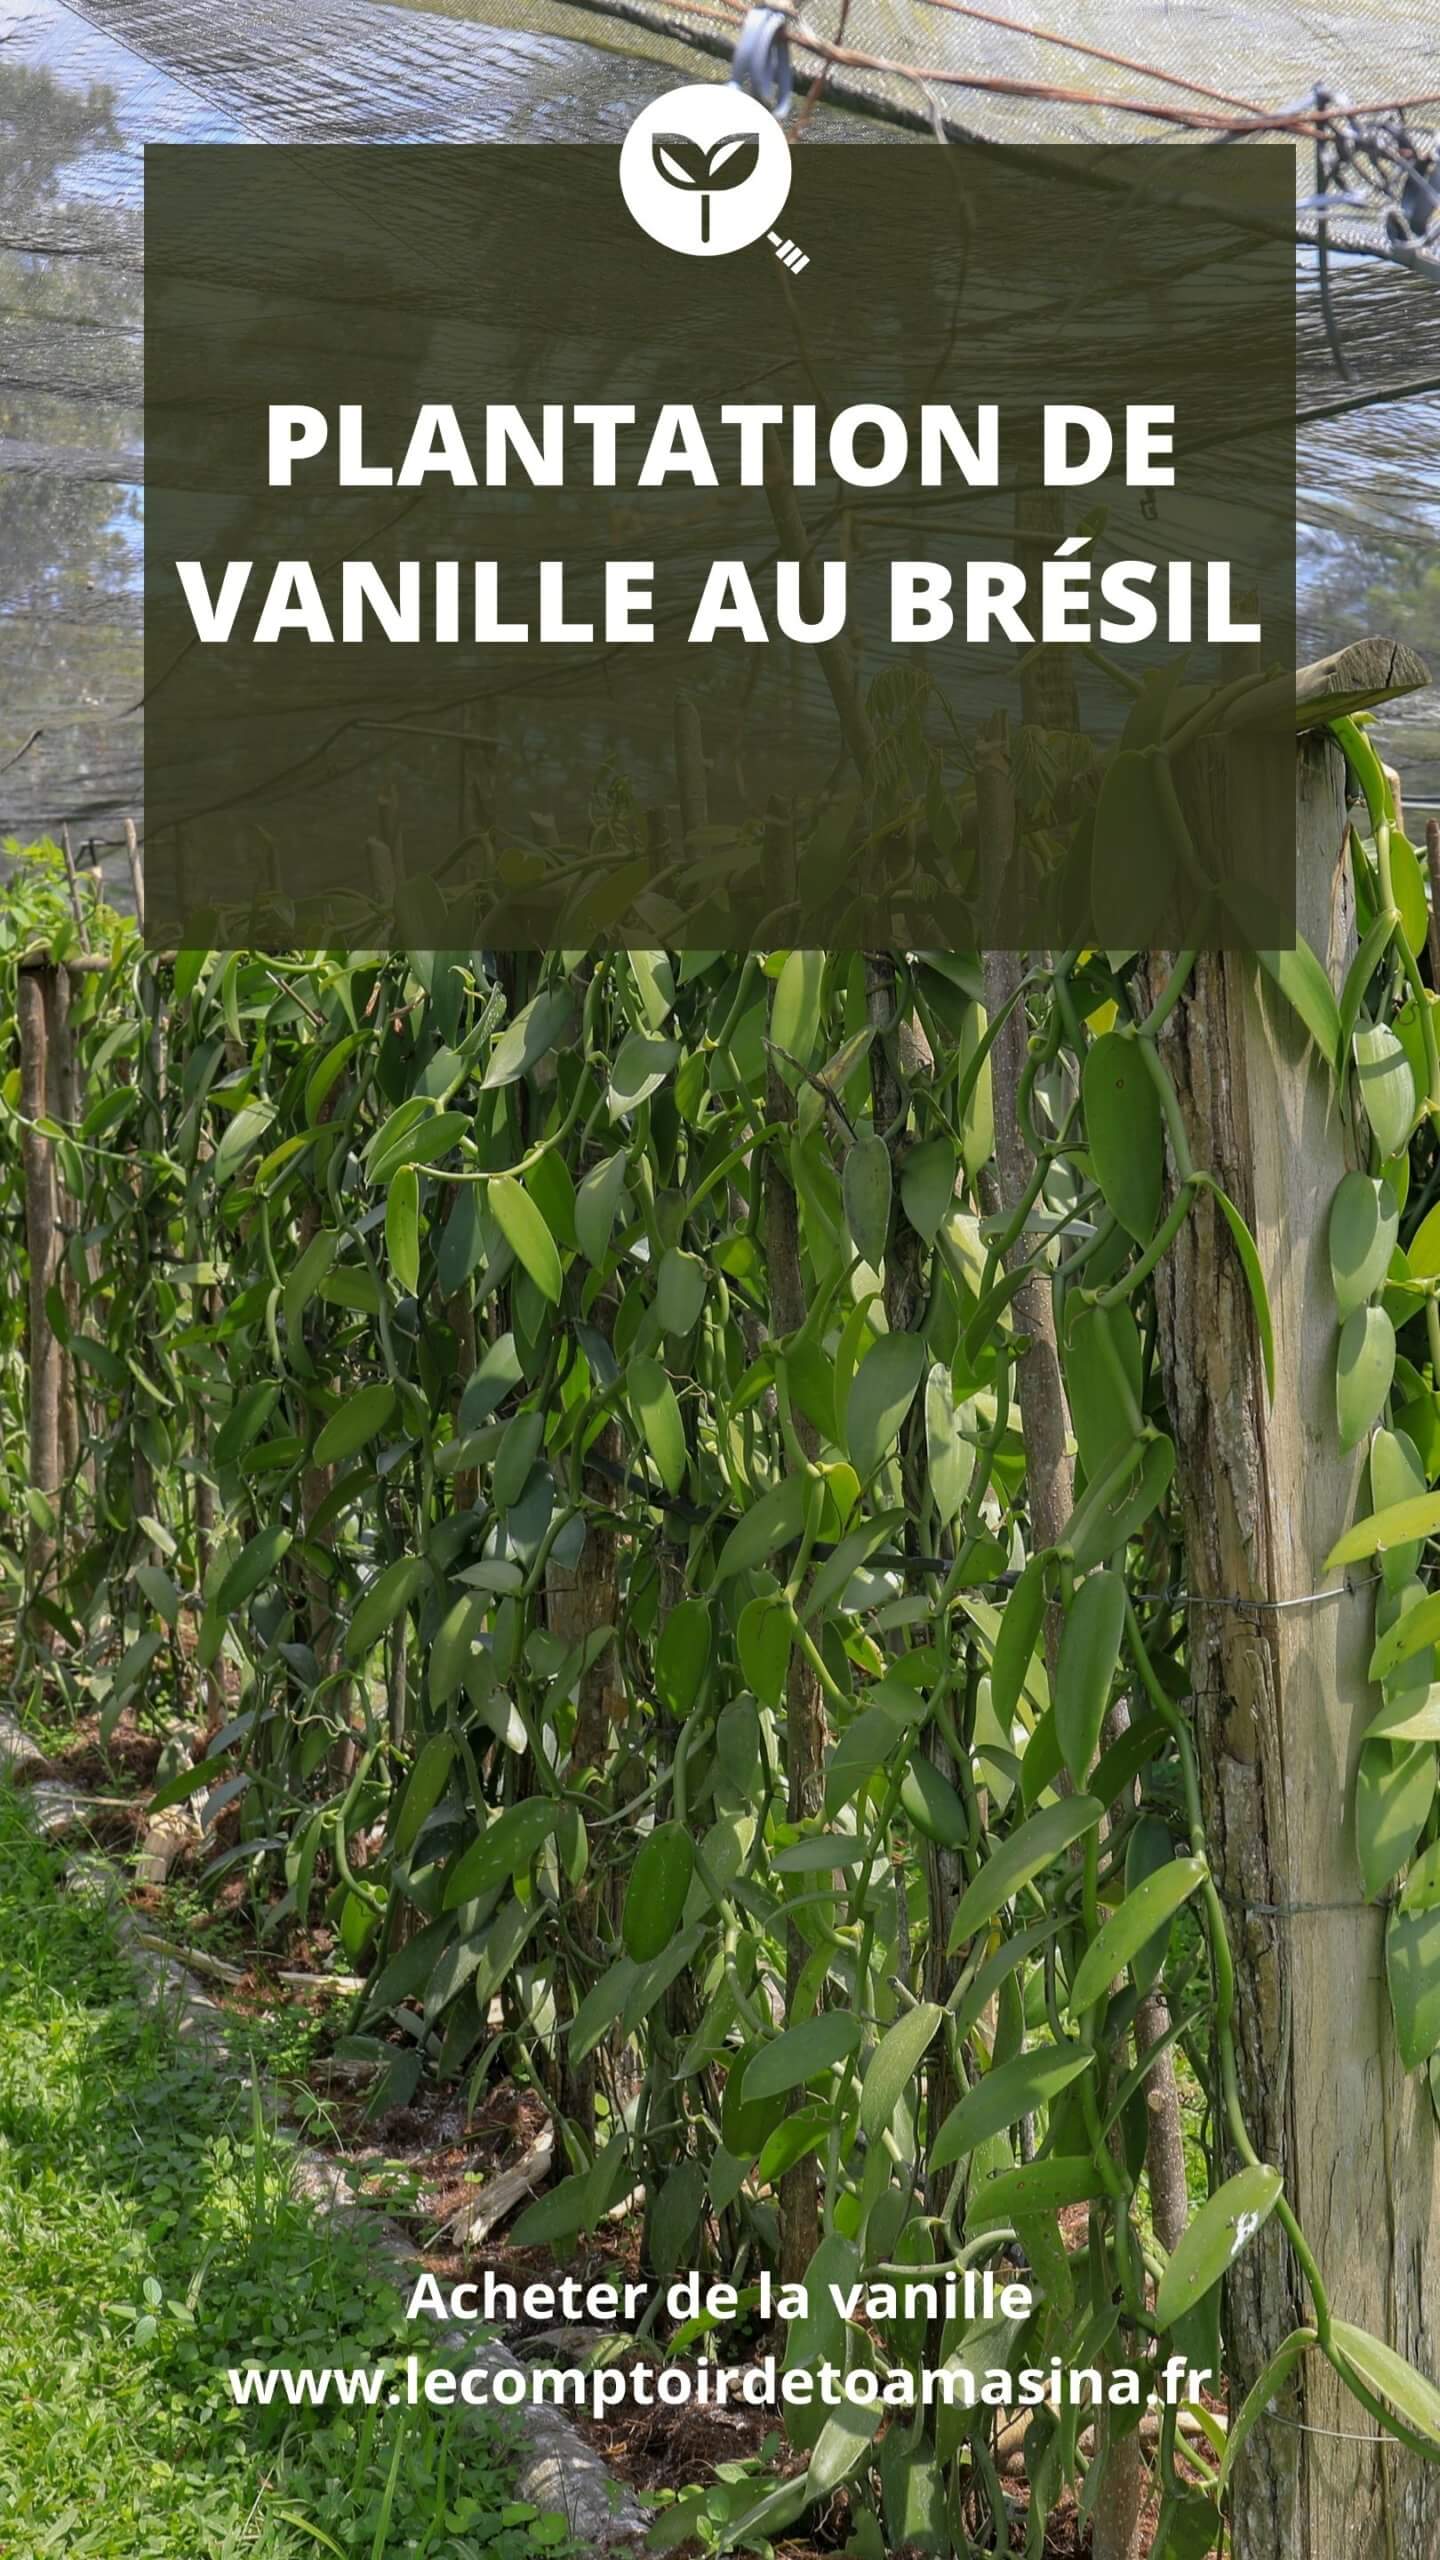 Plantation de vanille - Chercheur de vanille